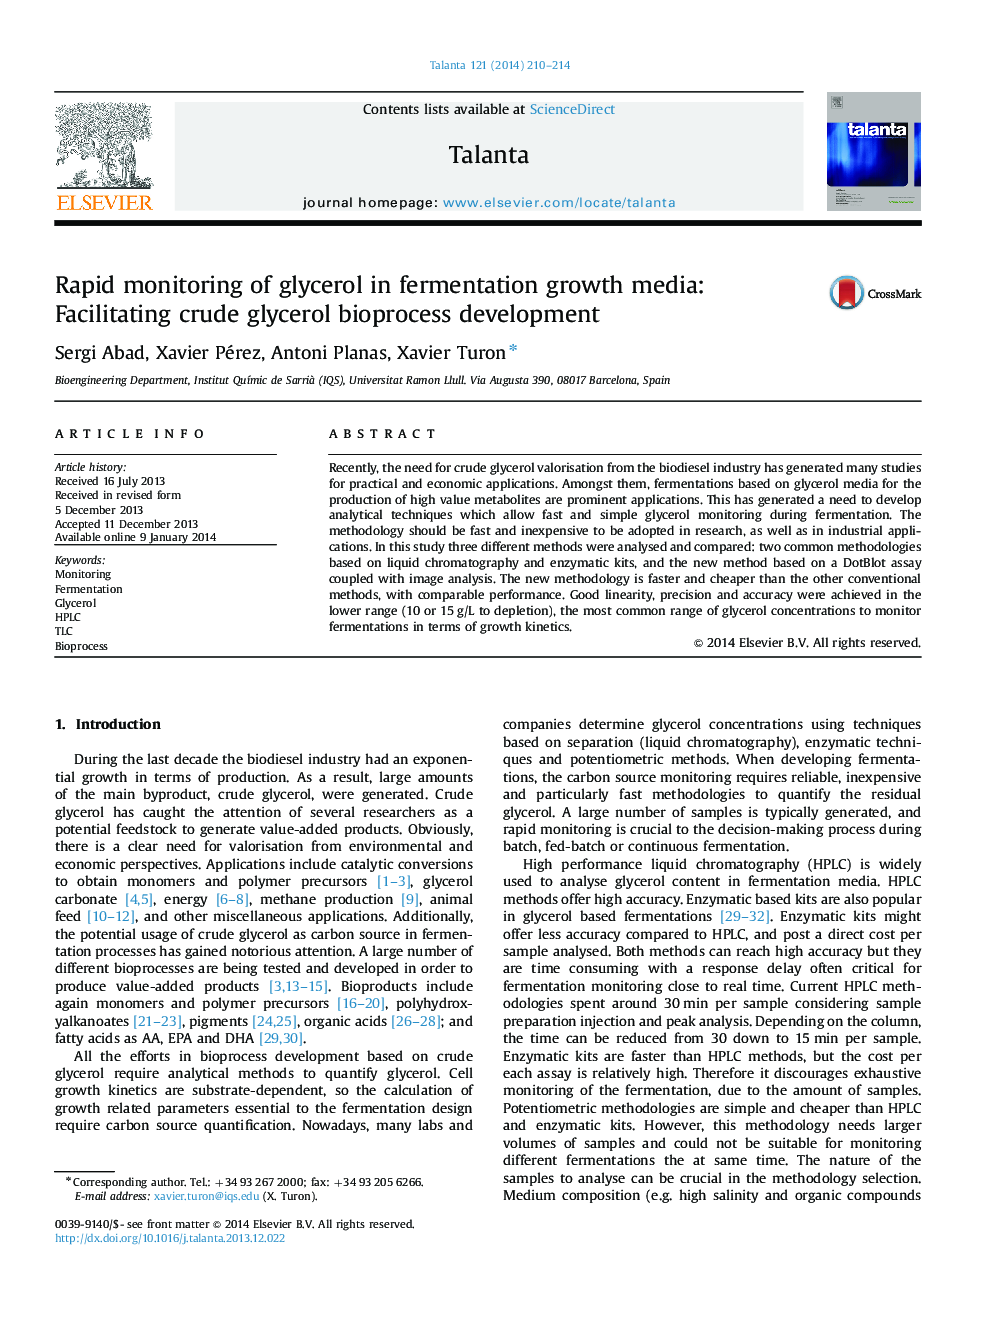 Rapid monitoring of glycerol in fermentation growth media: Facilitating crude glycerol bioprocess development